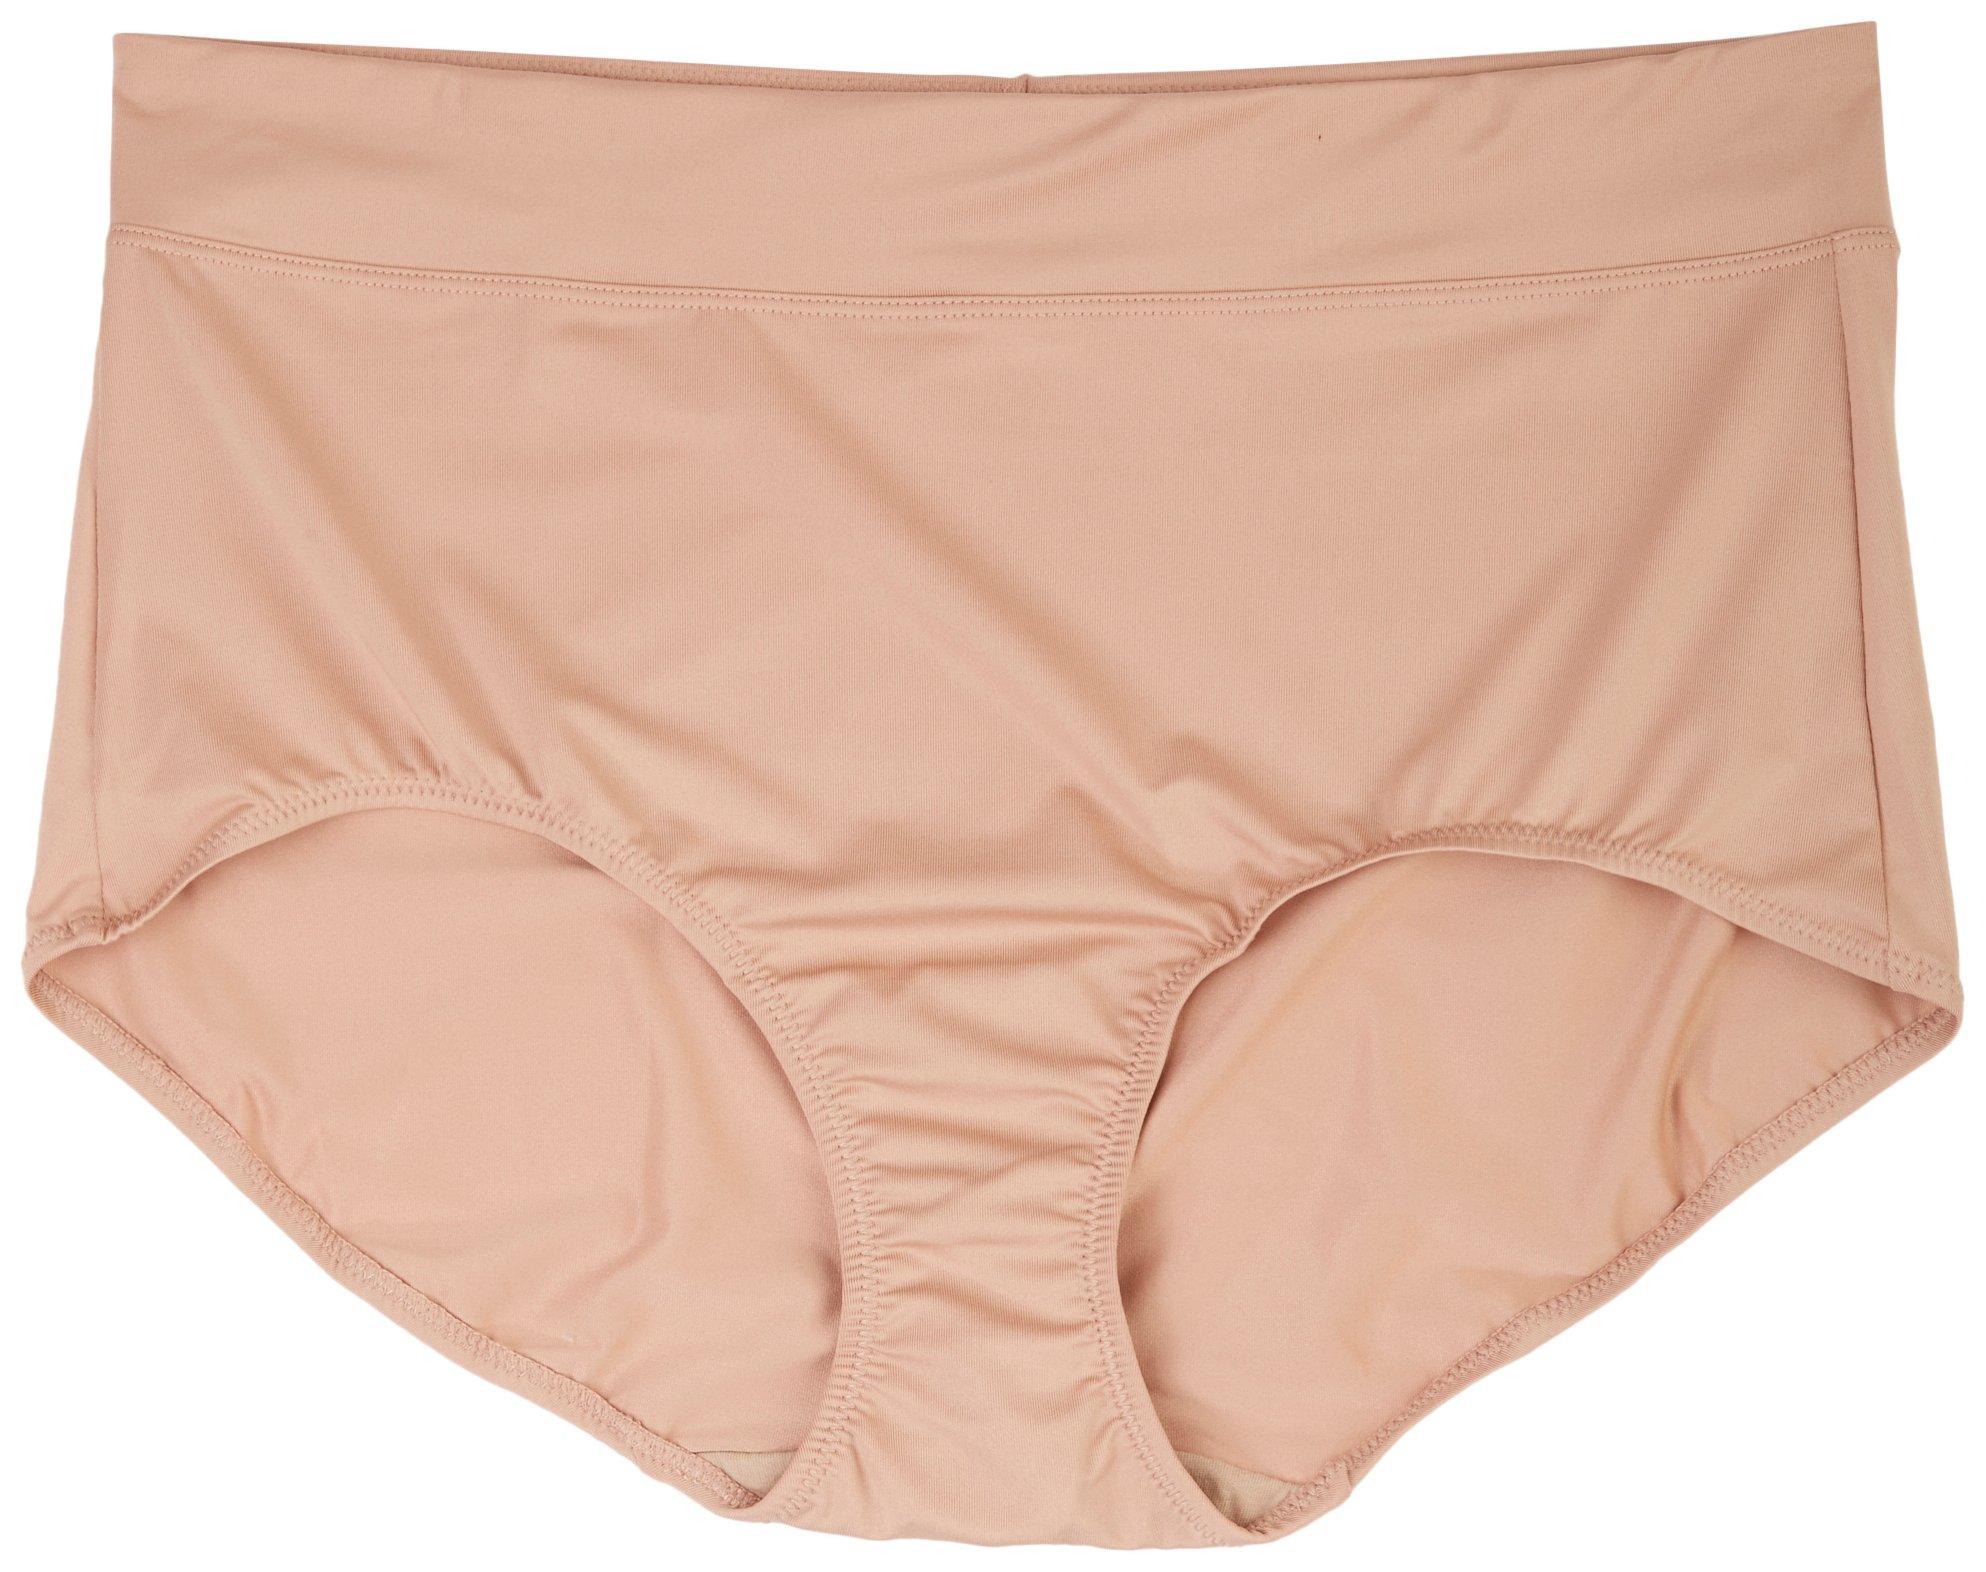 Warners brief panties microfiber 2 pair Size 6/M style 5738 for sale online